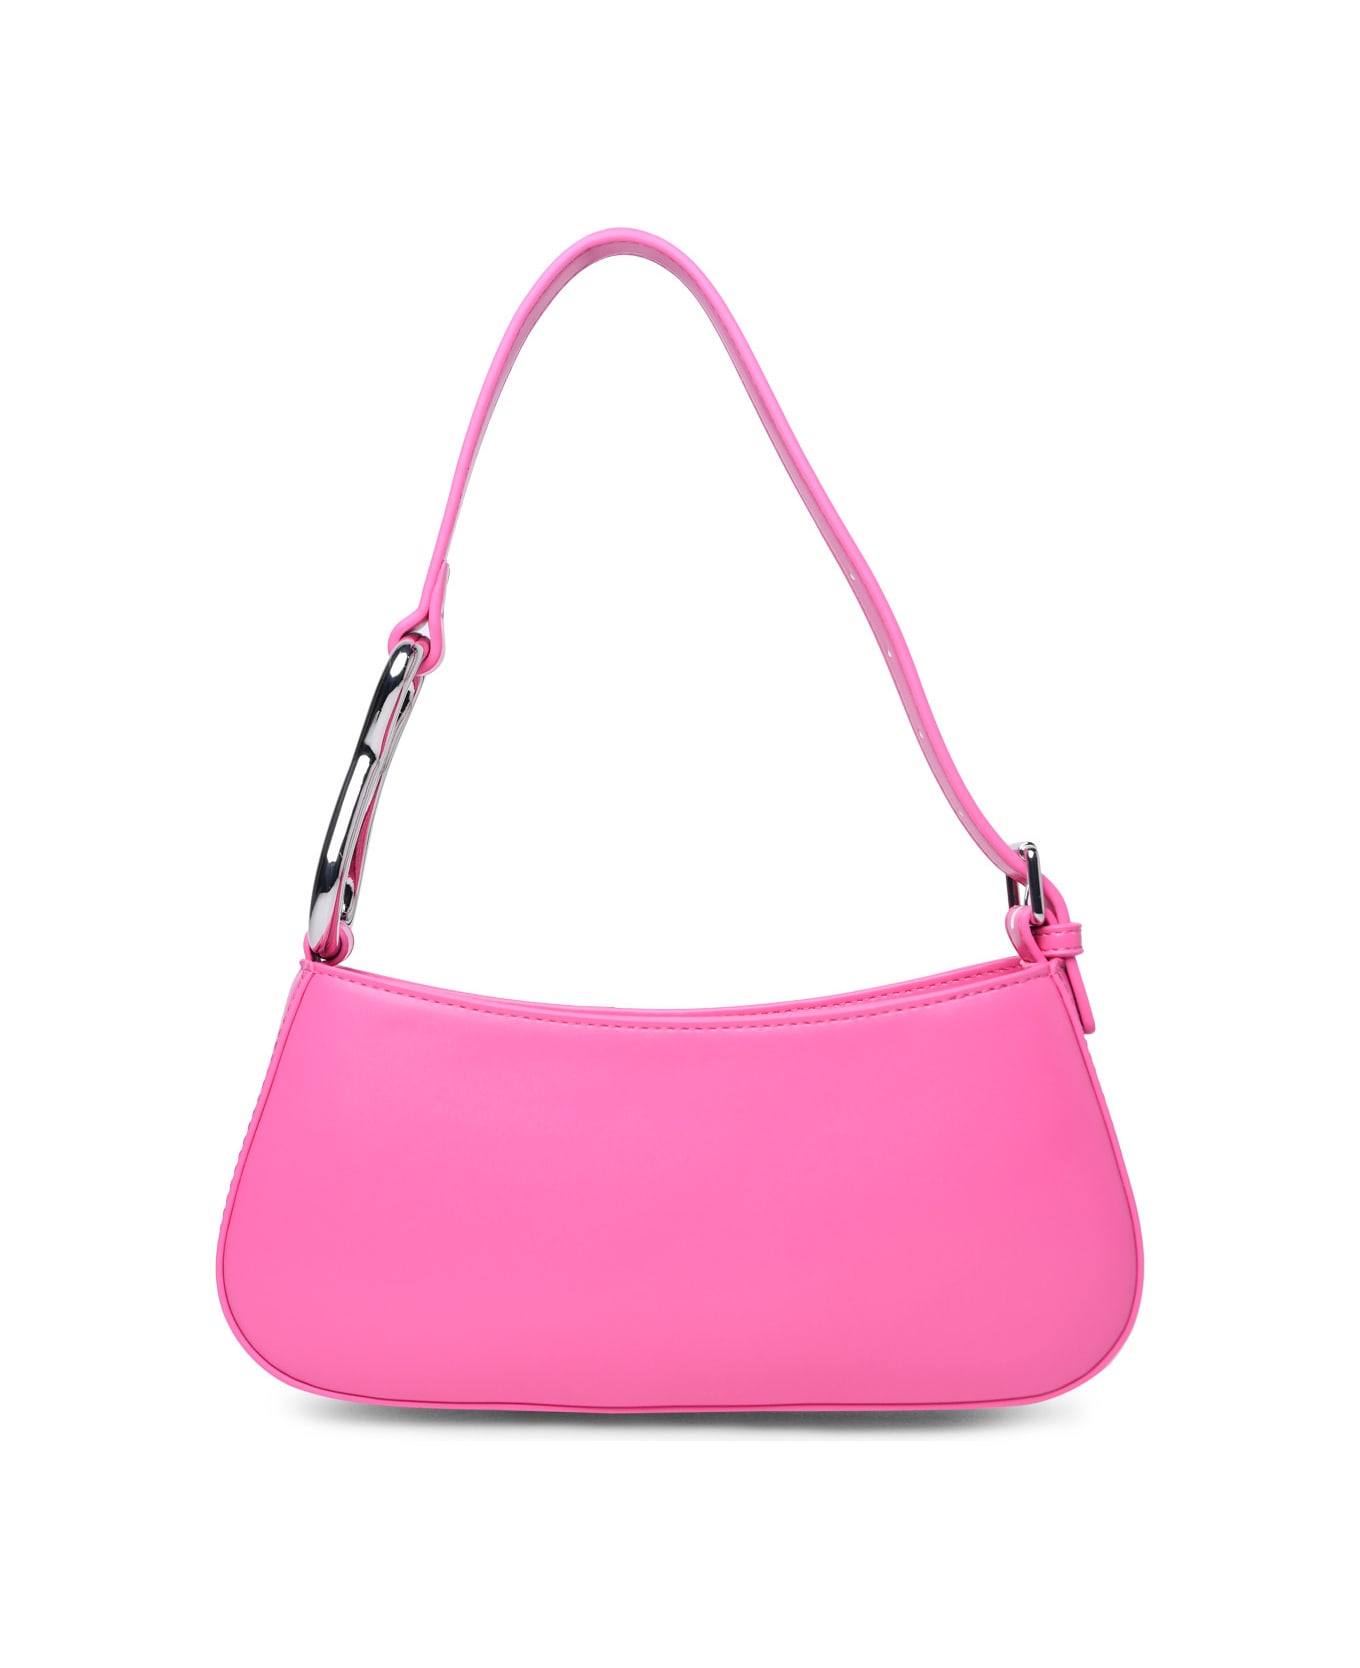 Chiara Ferragni 'cfloop' Pink Polyester Bag - Pink トートバッグ